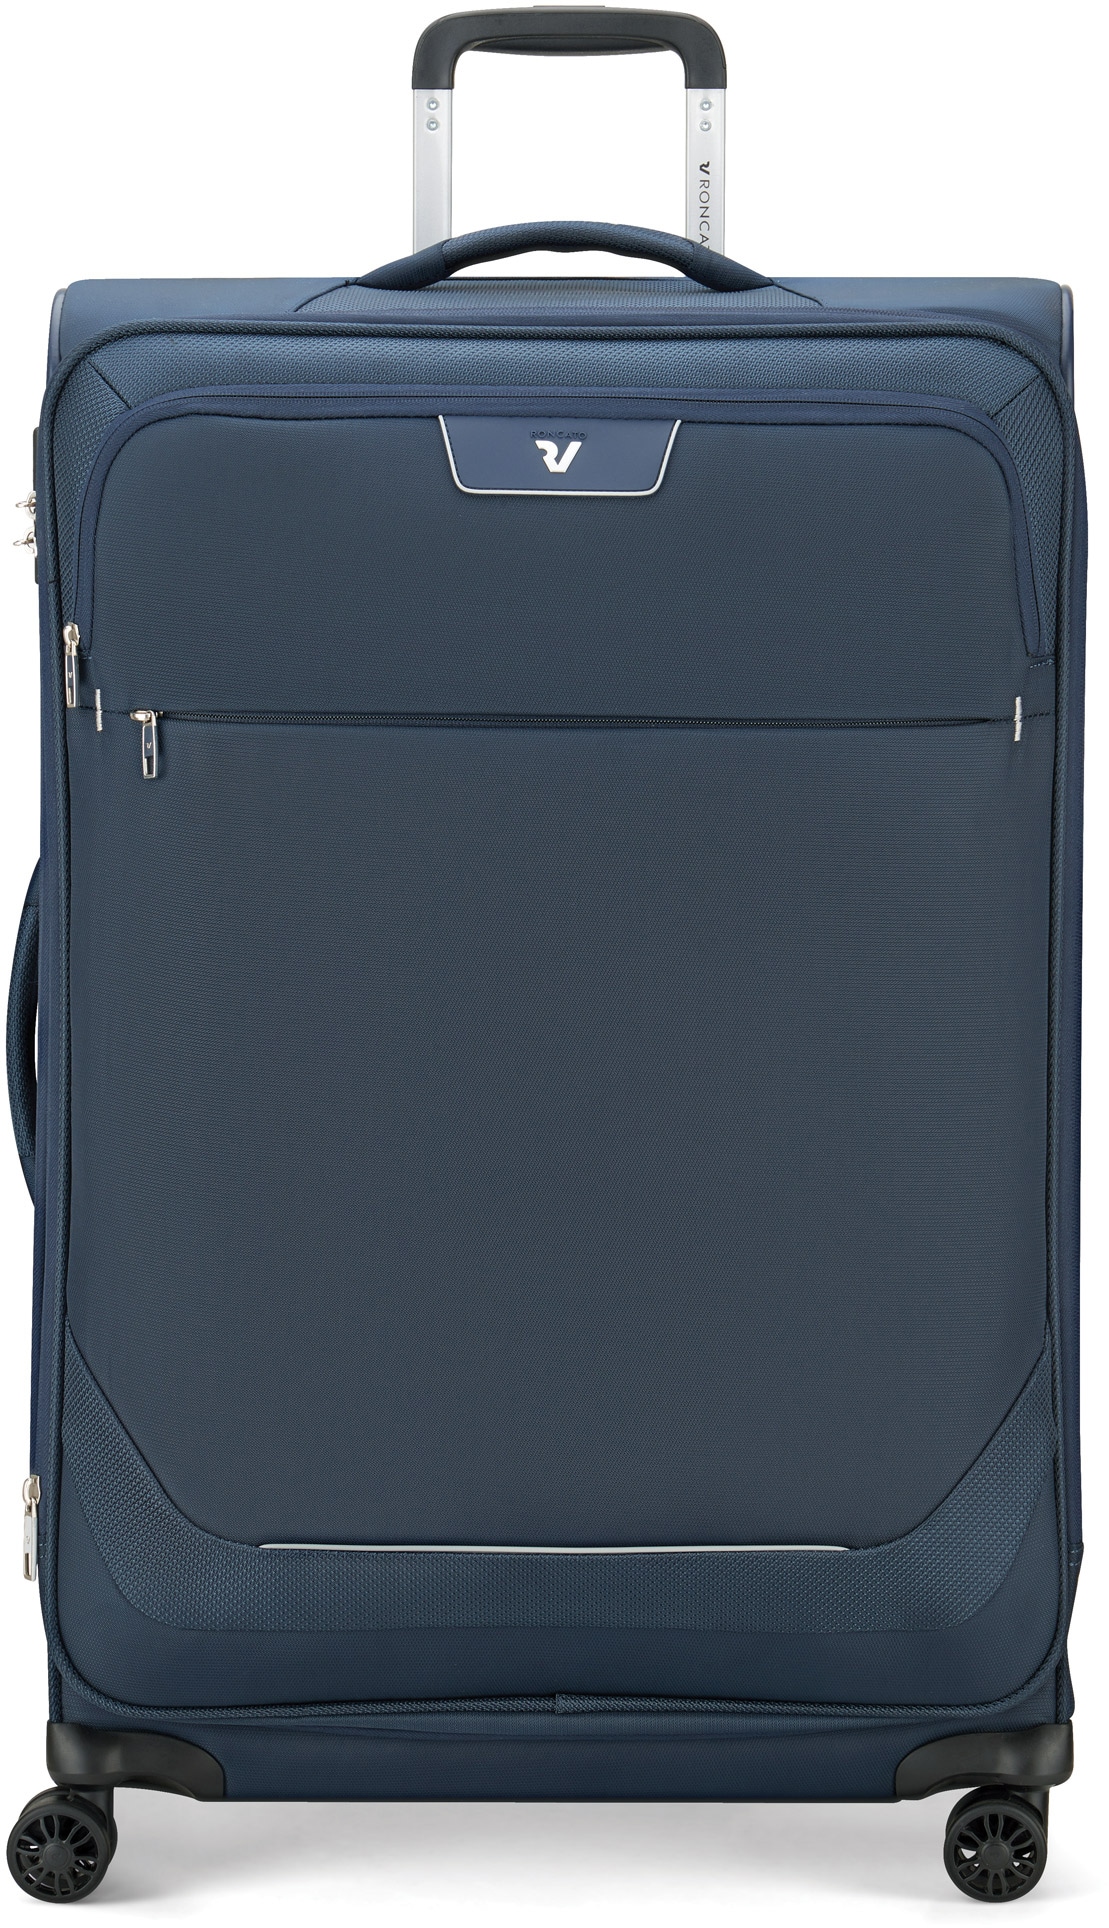 RONCATO Weichgepäck-Trolley "Joy, 75 cm", 4 Rollen, Reisegepäck Koffer mittel groß mit Volumenerweiterung und TSA Schlos